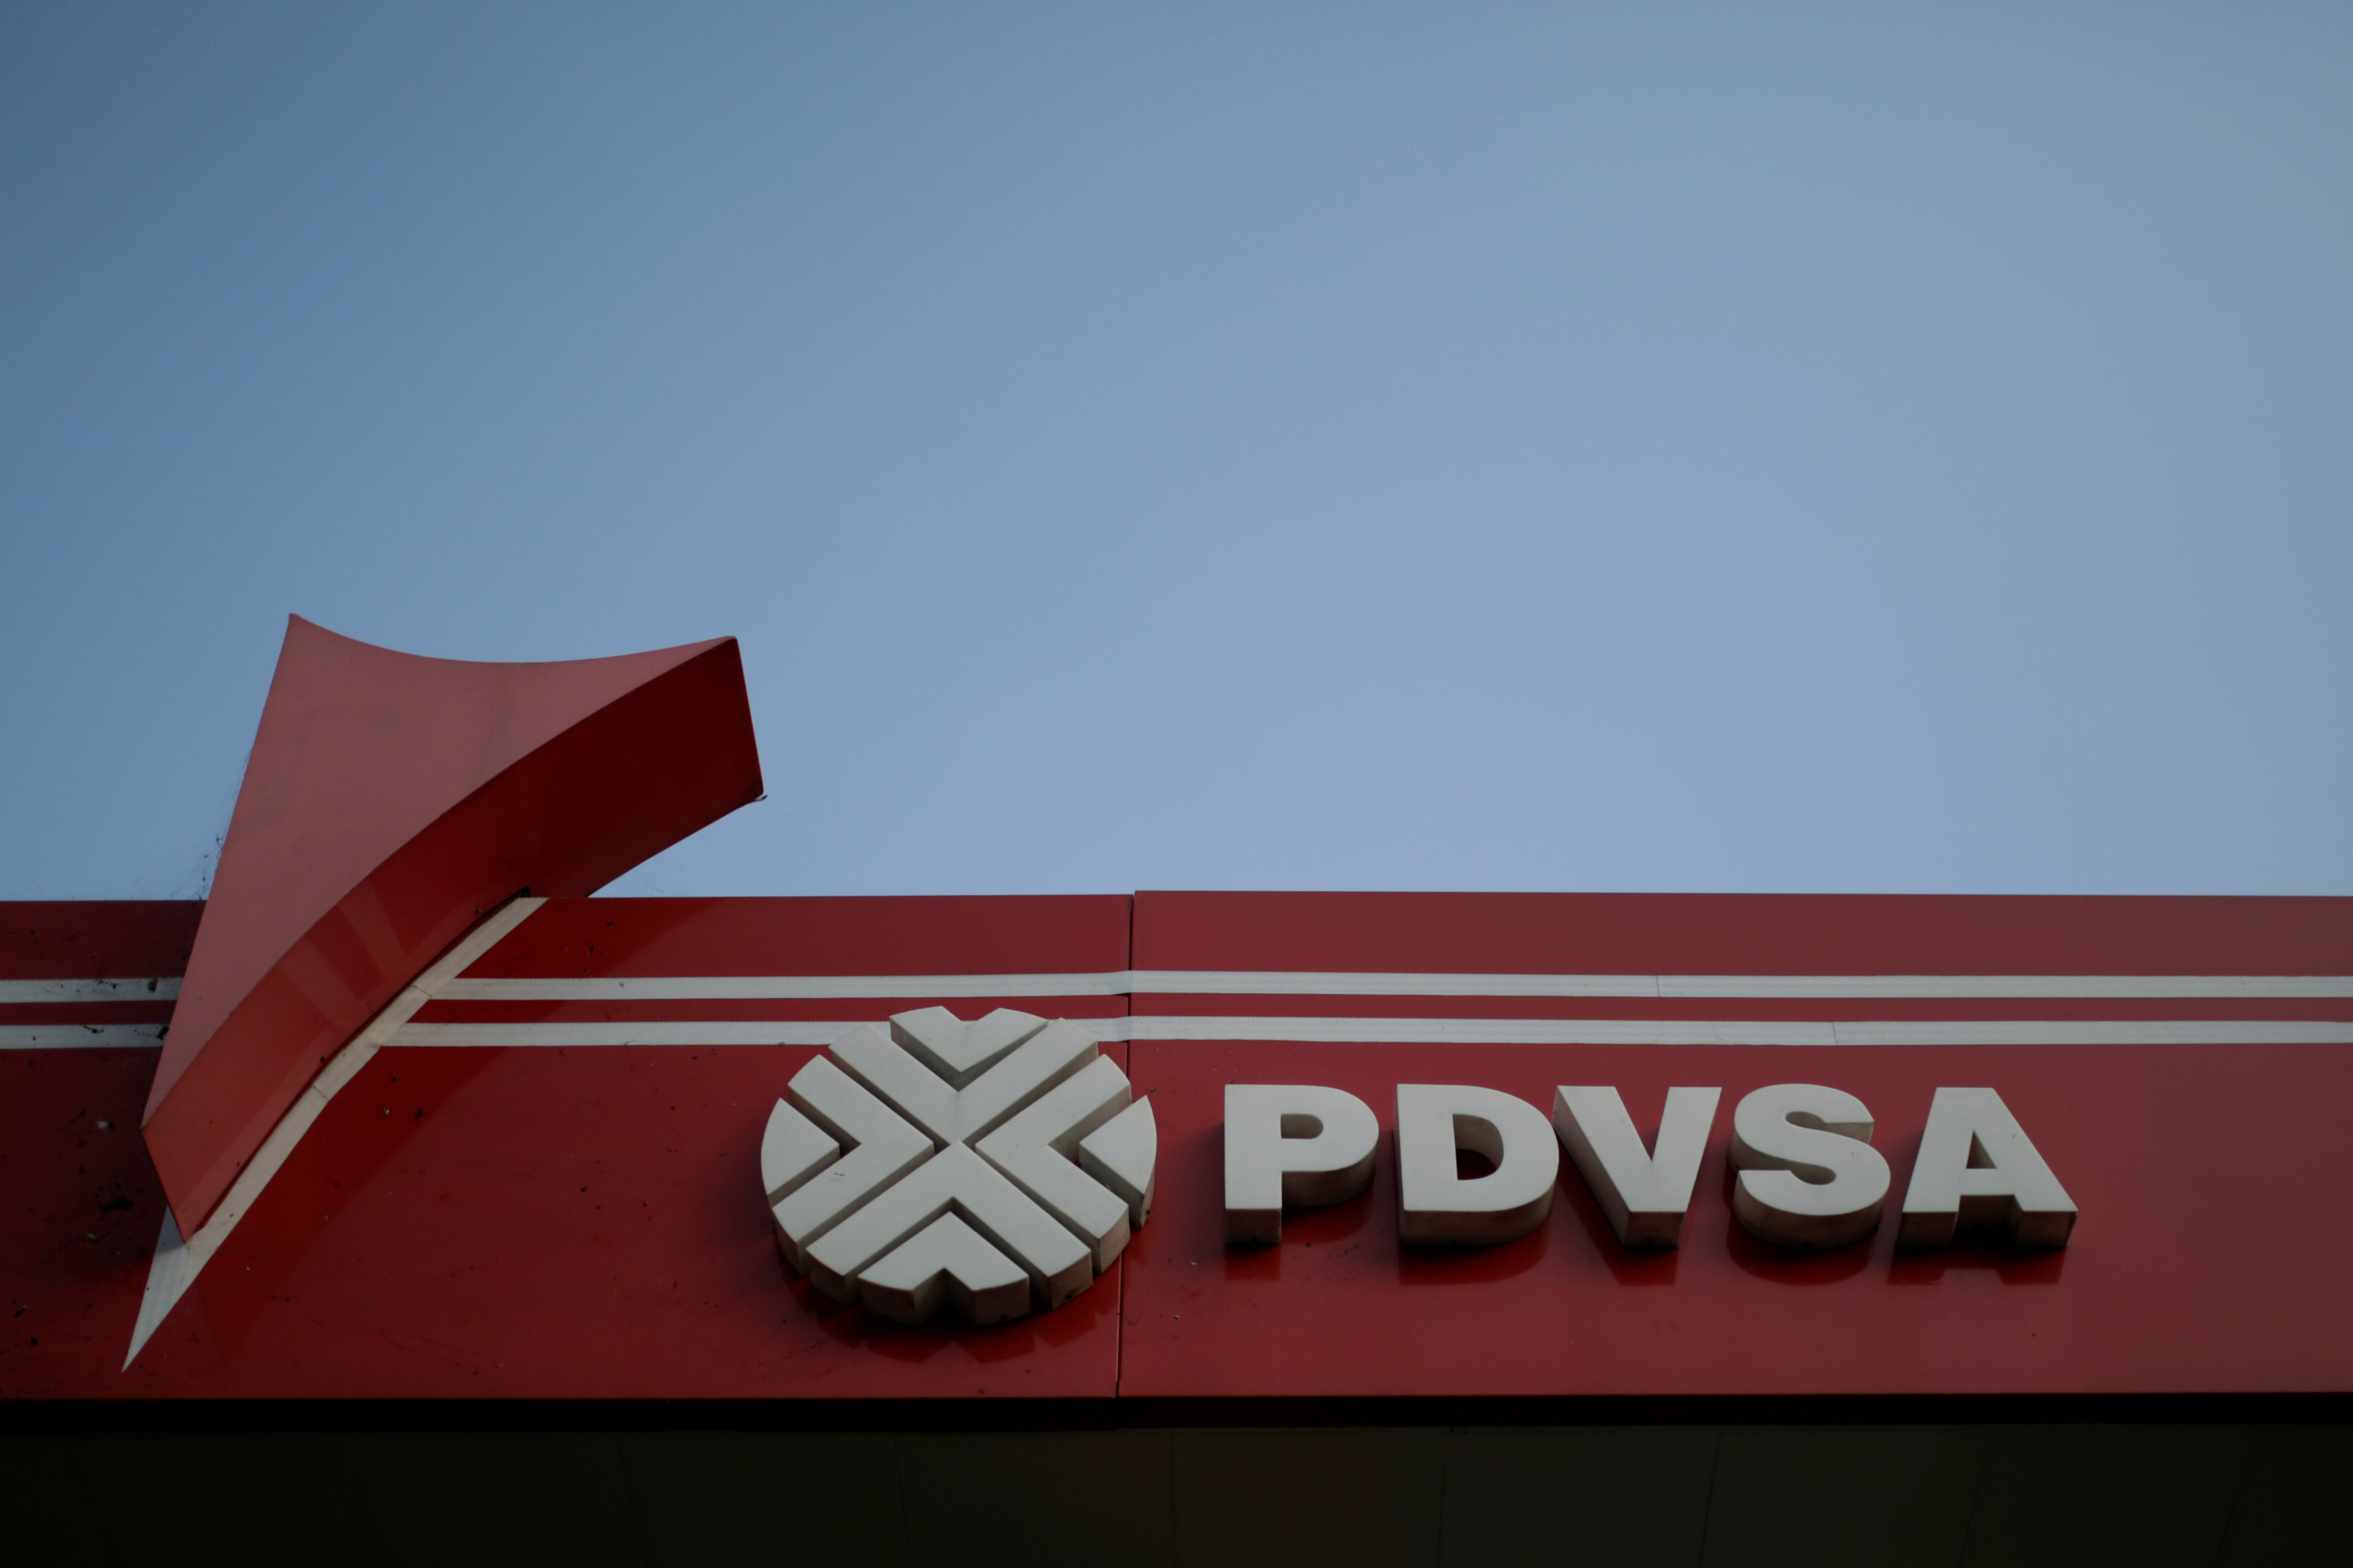 Venezuela's PDVSA oil revenue tumbles amid lower prices, production